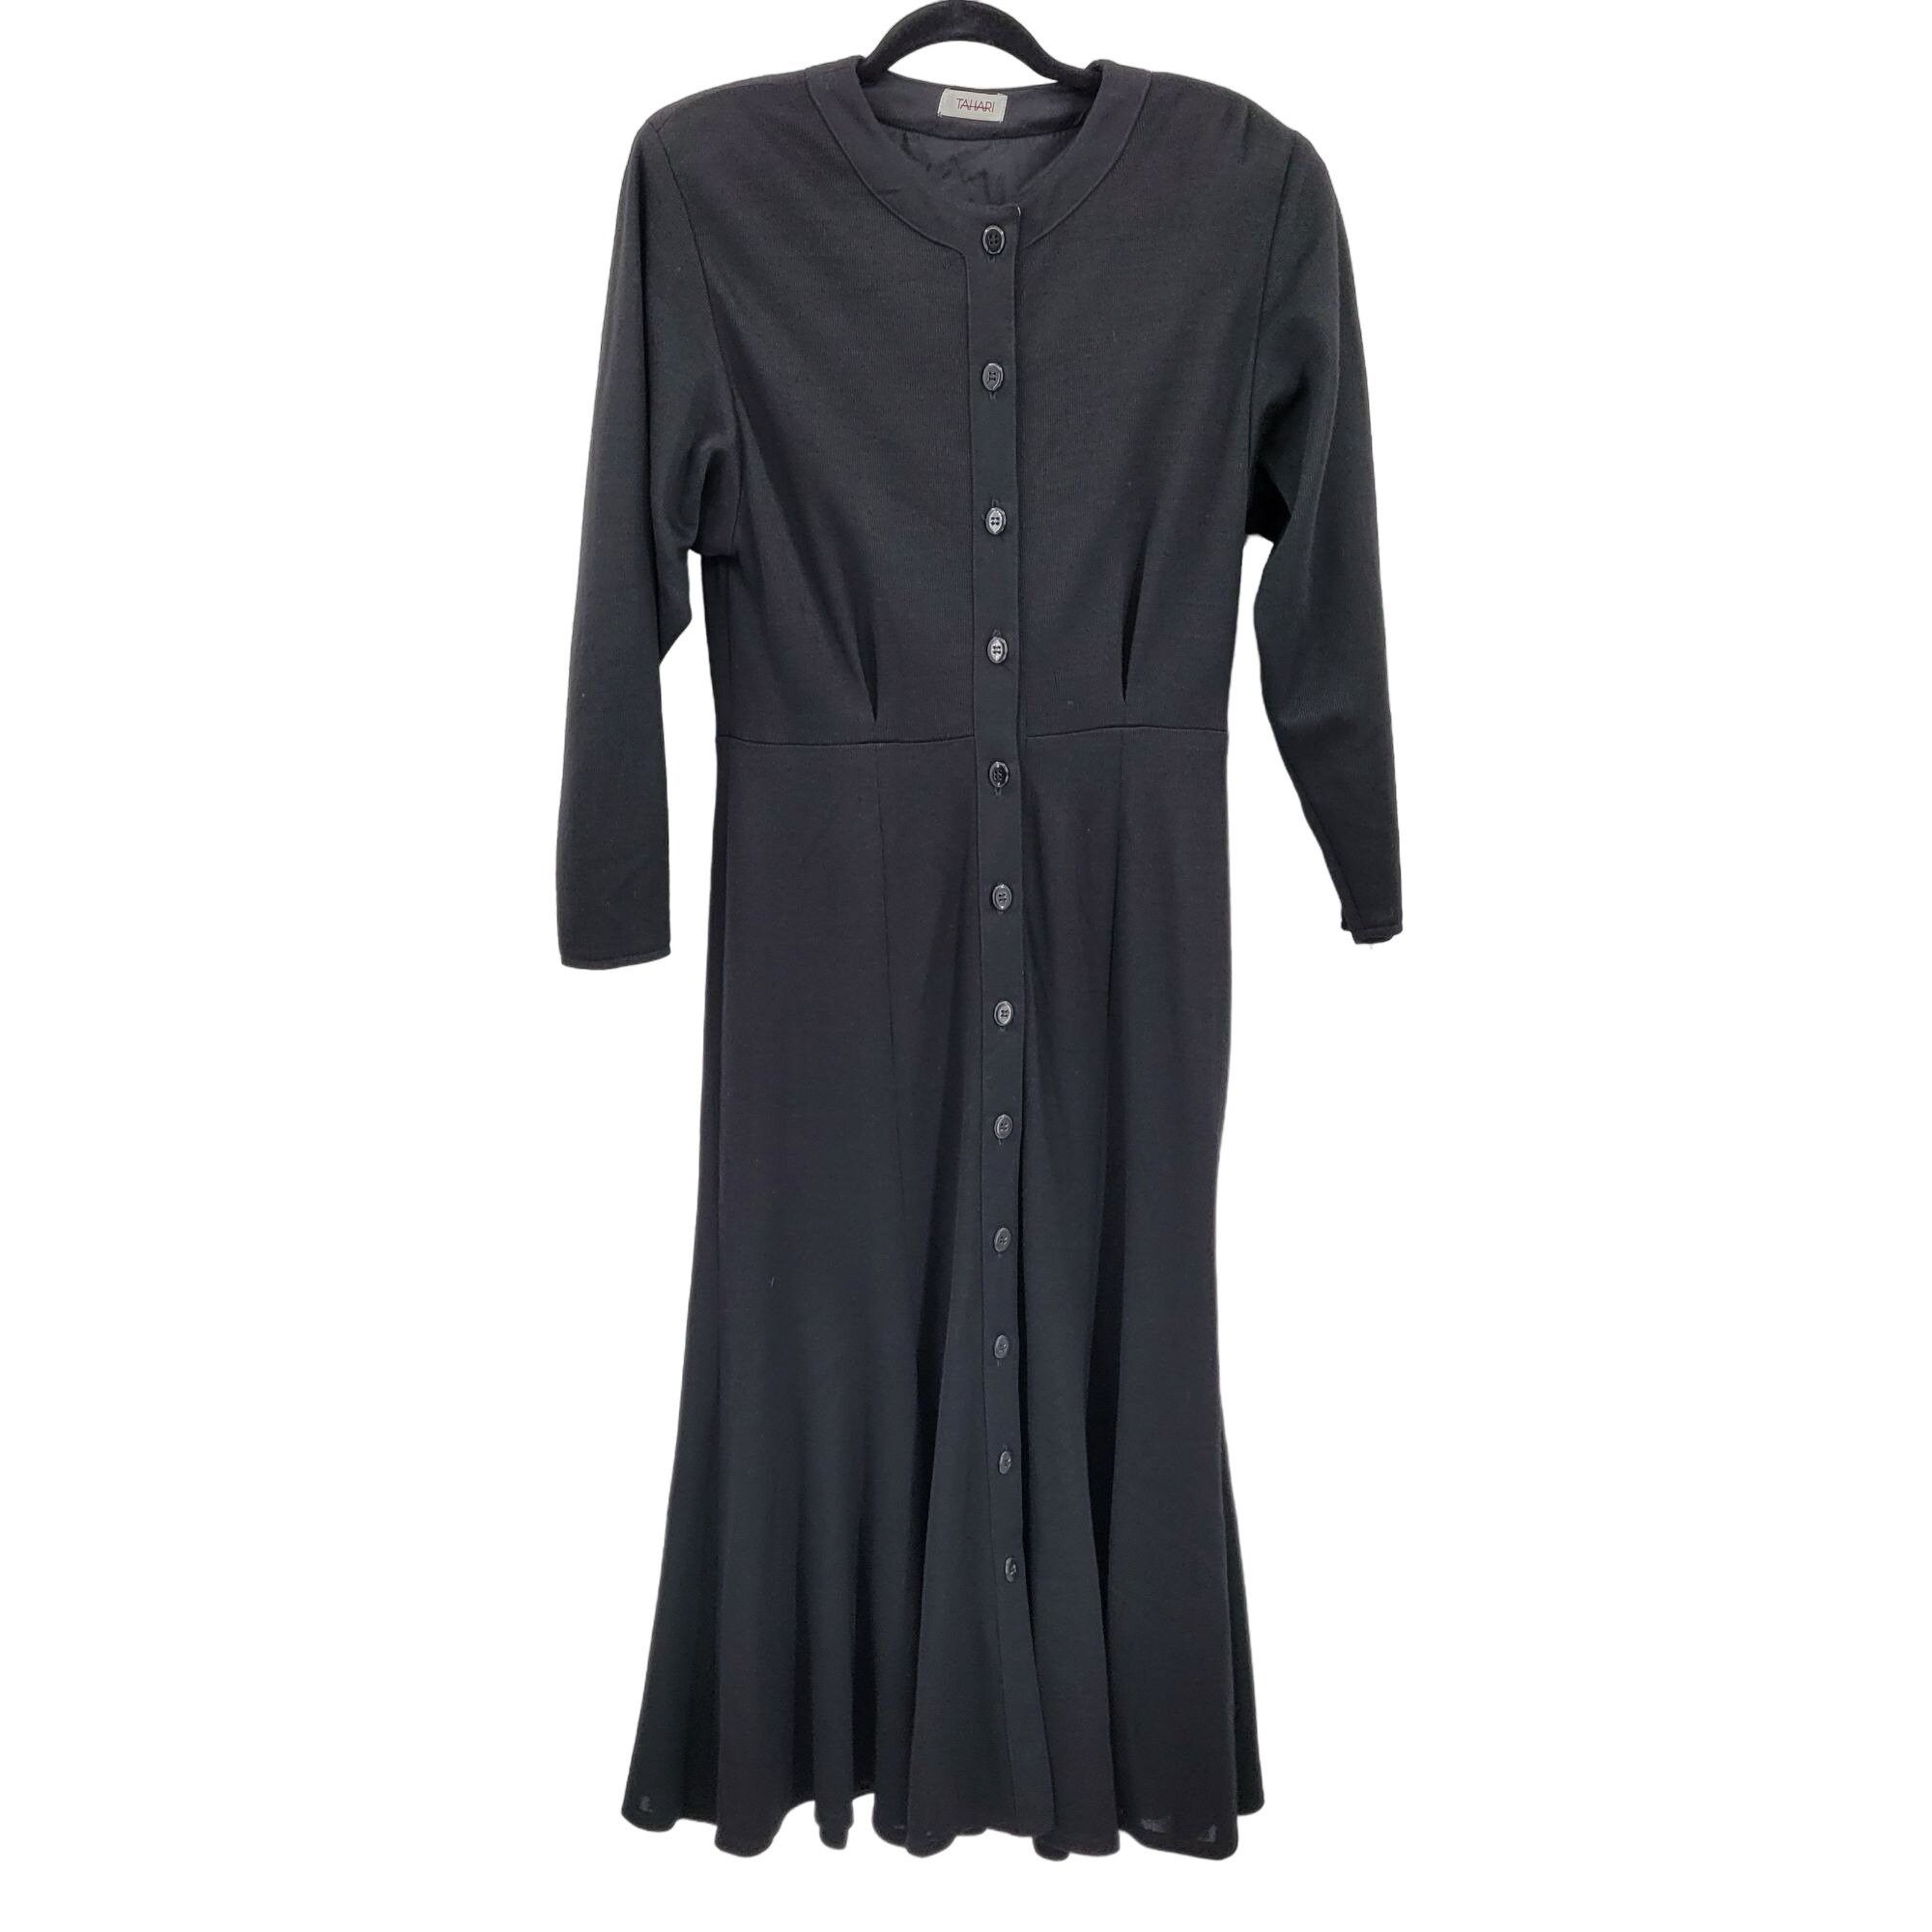 Elie Tahari 80s Tahari Dress Wool Knit Modest Long Sleeve Maxi Black Size M / US 6-8 / IT 42-44 - 13 Preview